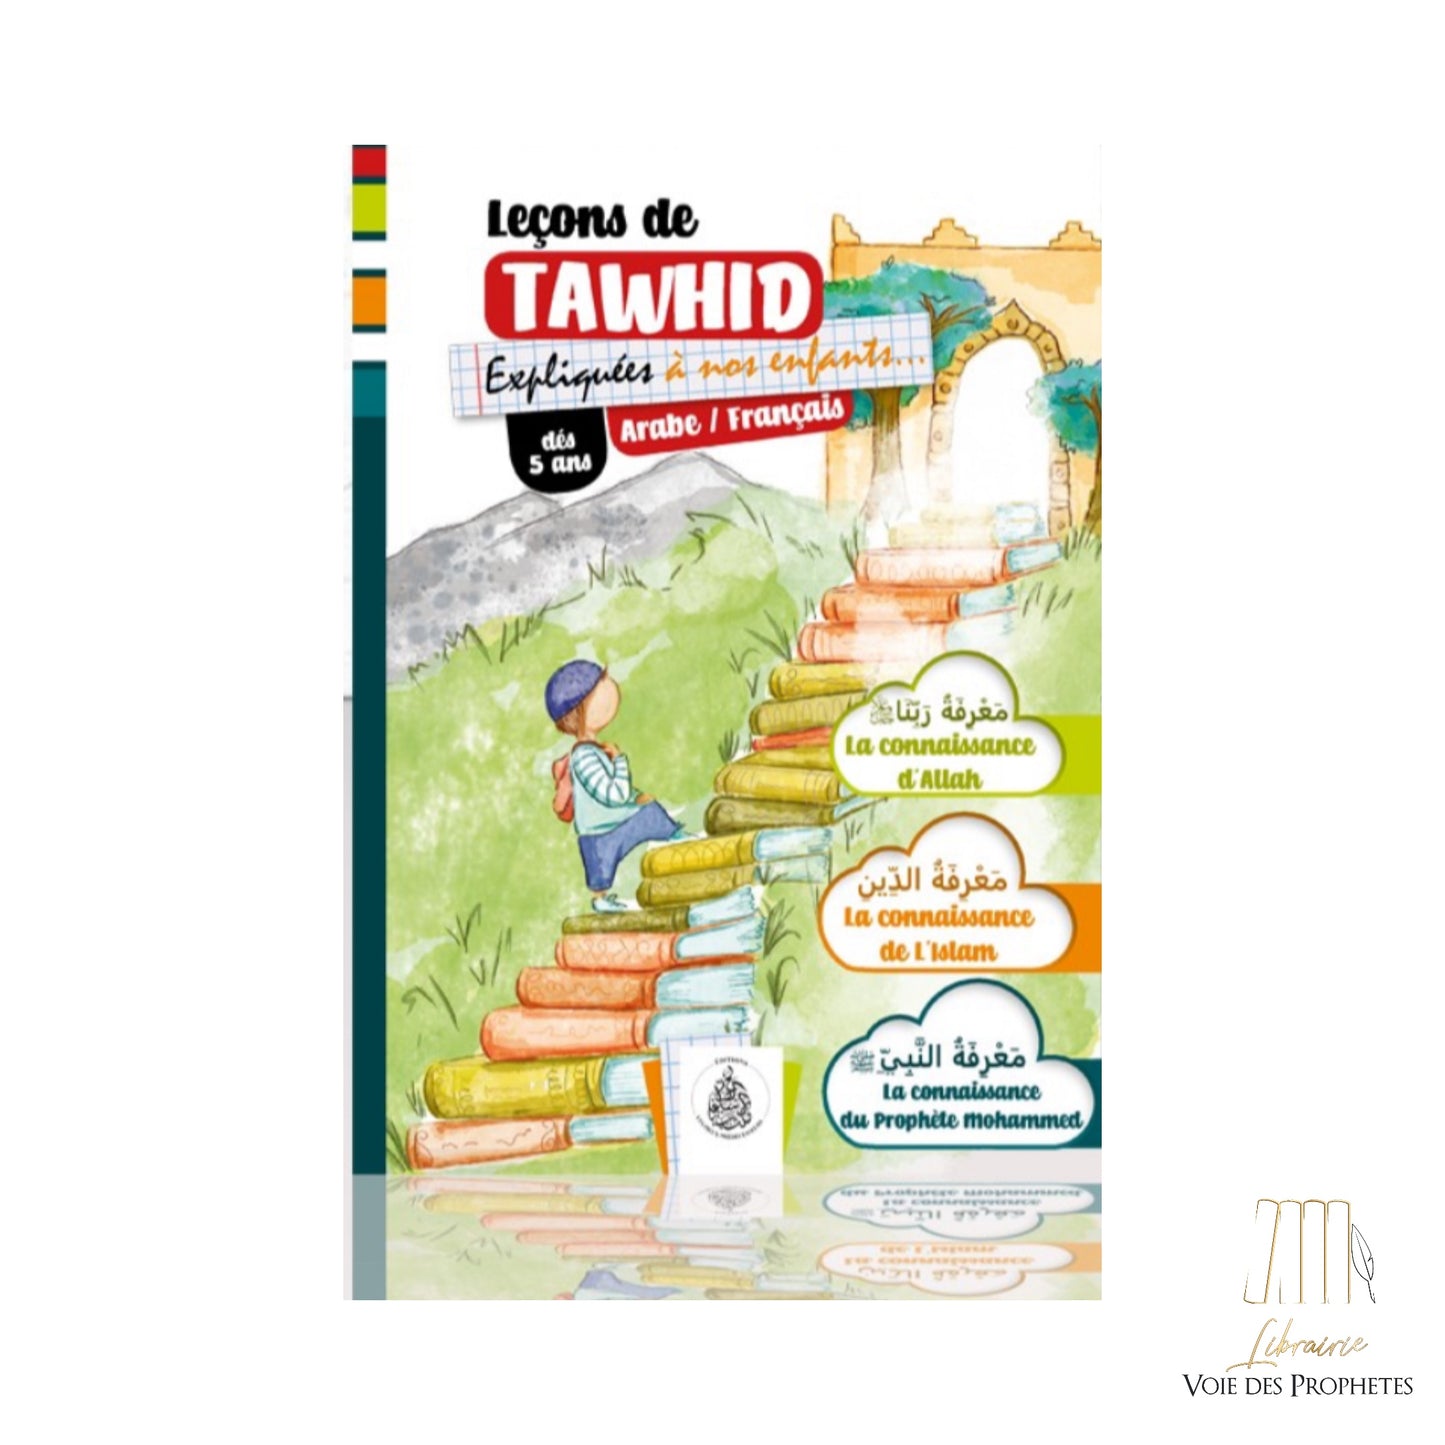 Leçons de Tawhid expliquées aux enfants Bilingue Arabe/Français